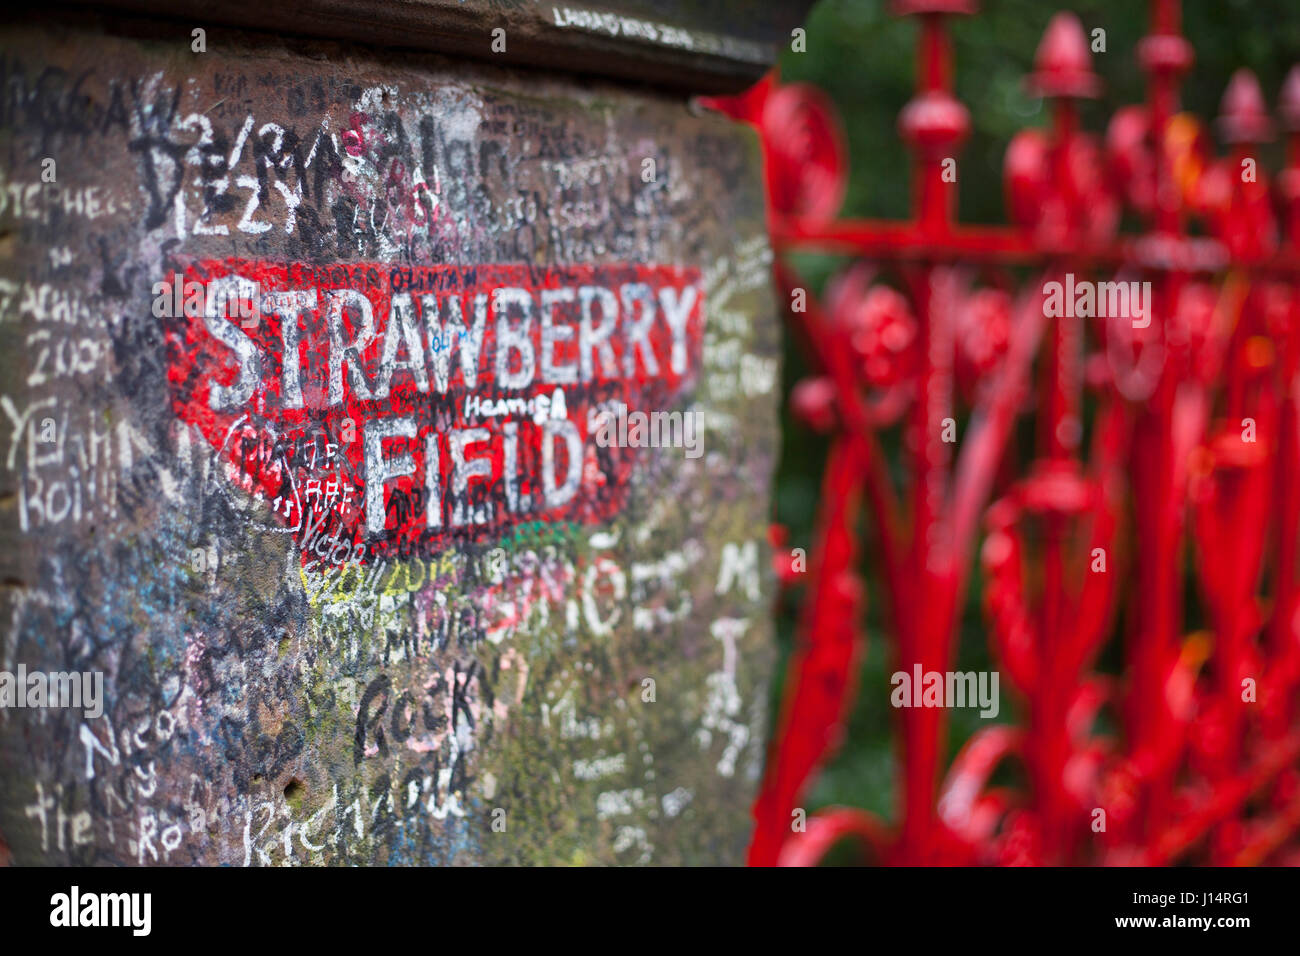 Sito della famosa Strawberry Fields nella città inglese di Liverpool, Regno Unito. Oggetto di una canzone dei Beatles Foto Stock